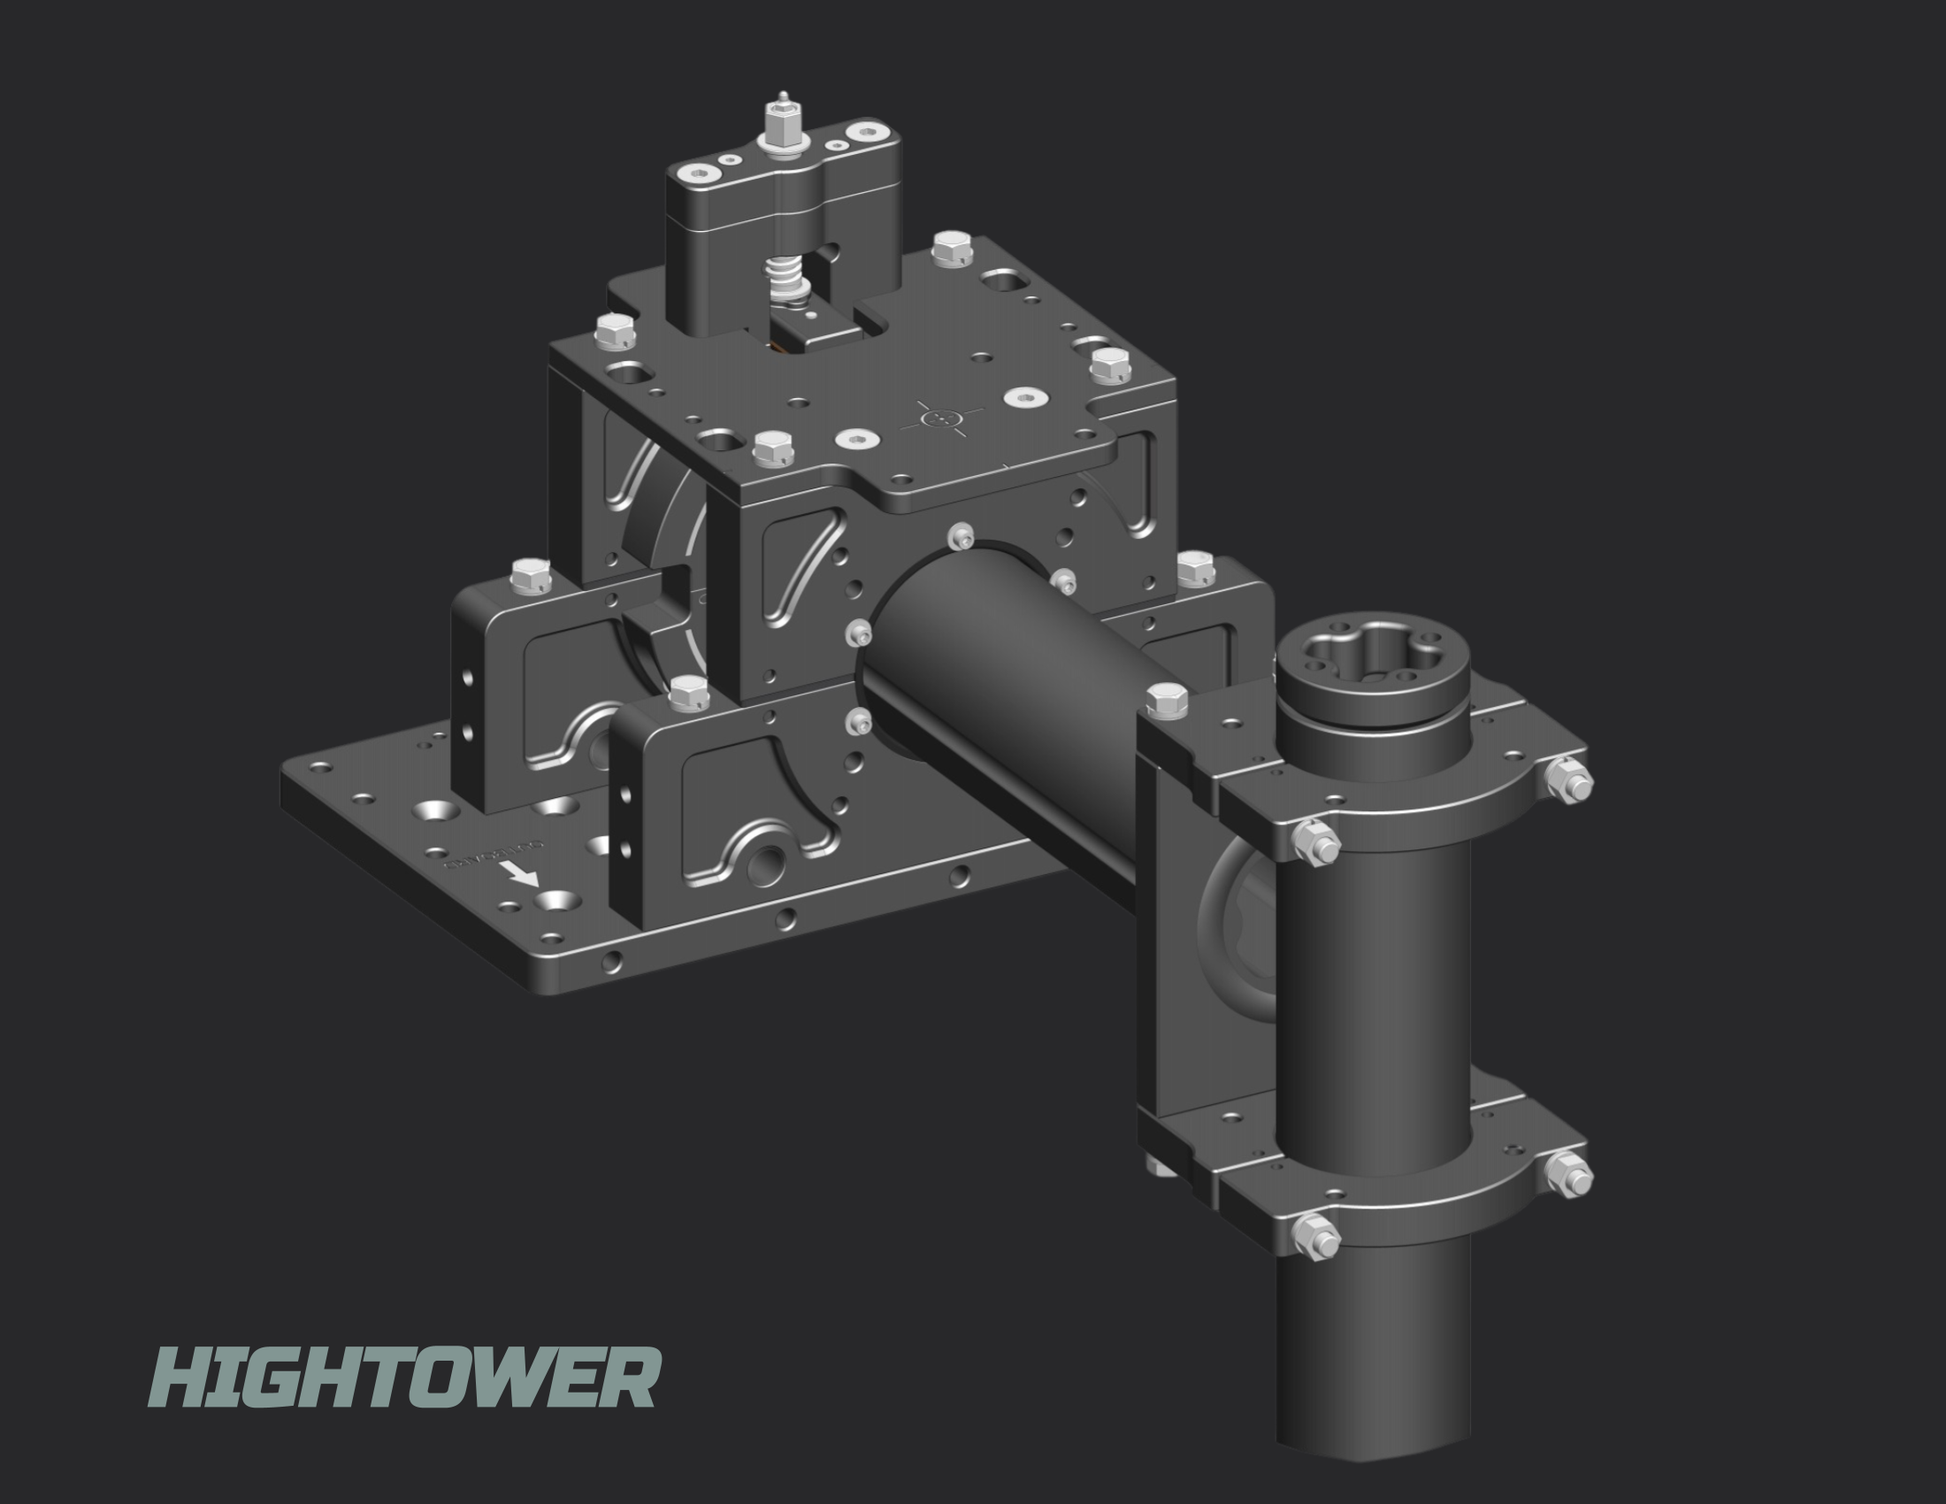 hightower for multibeam sonar